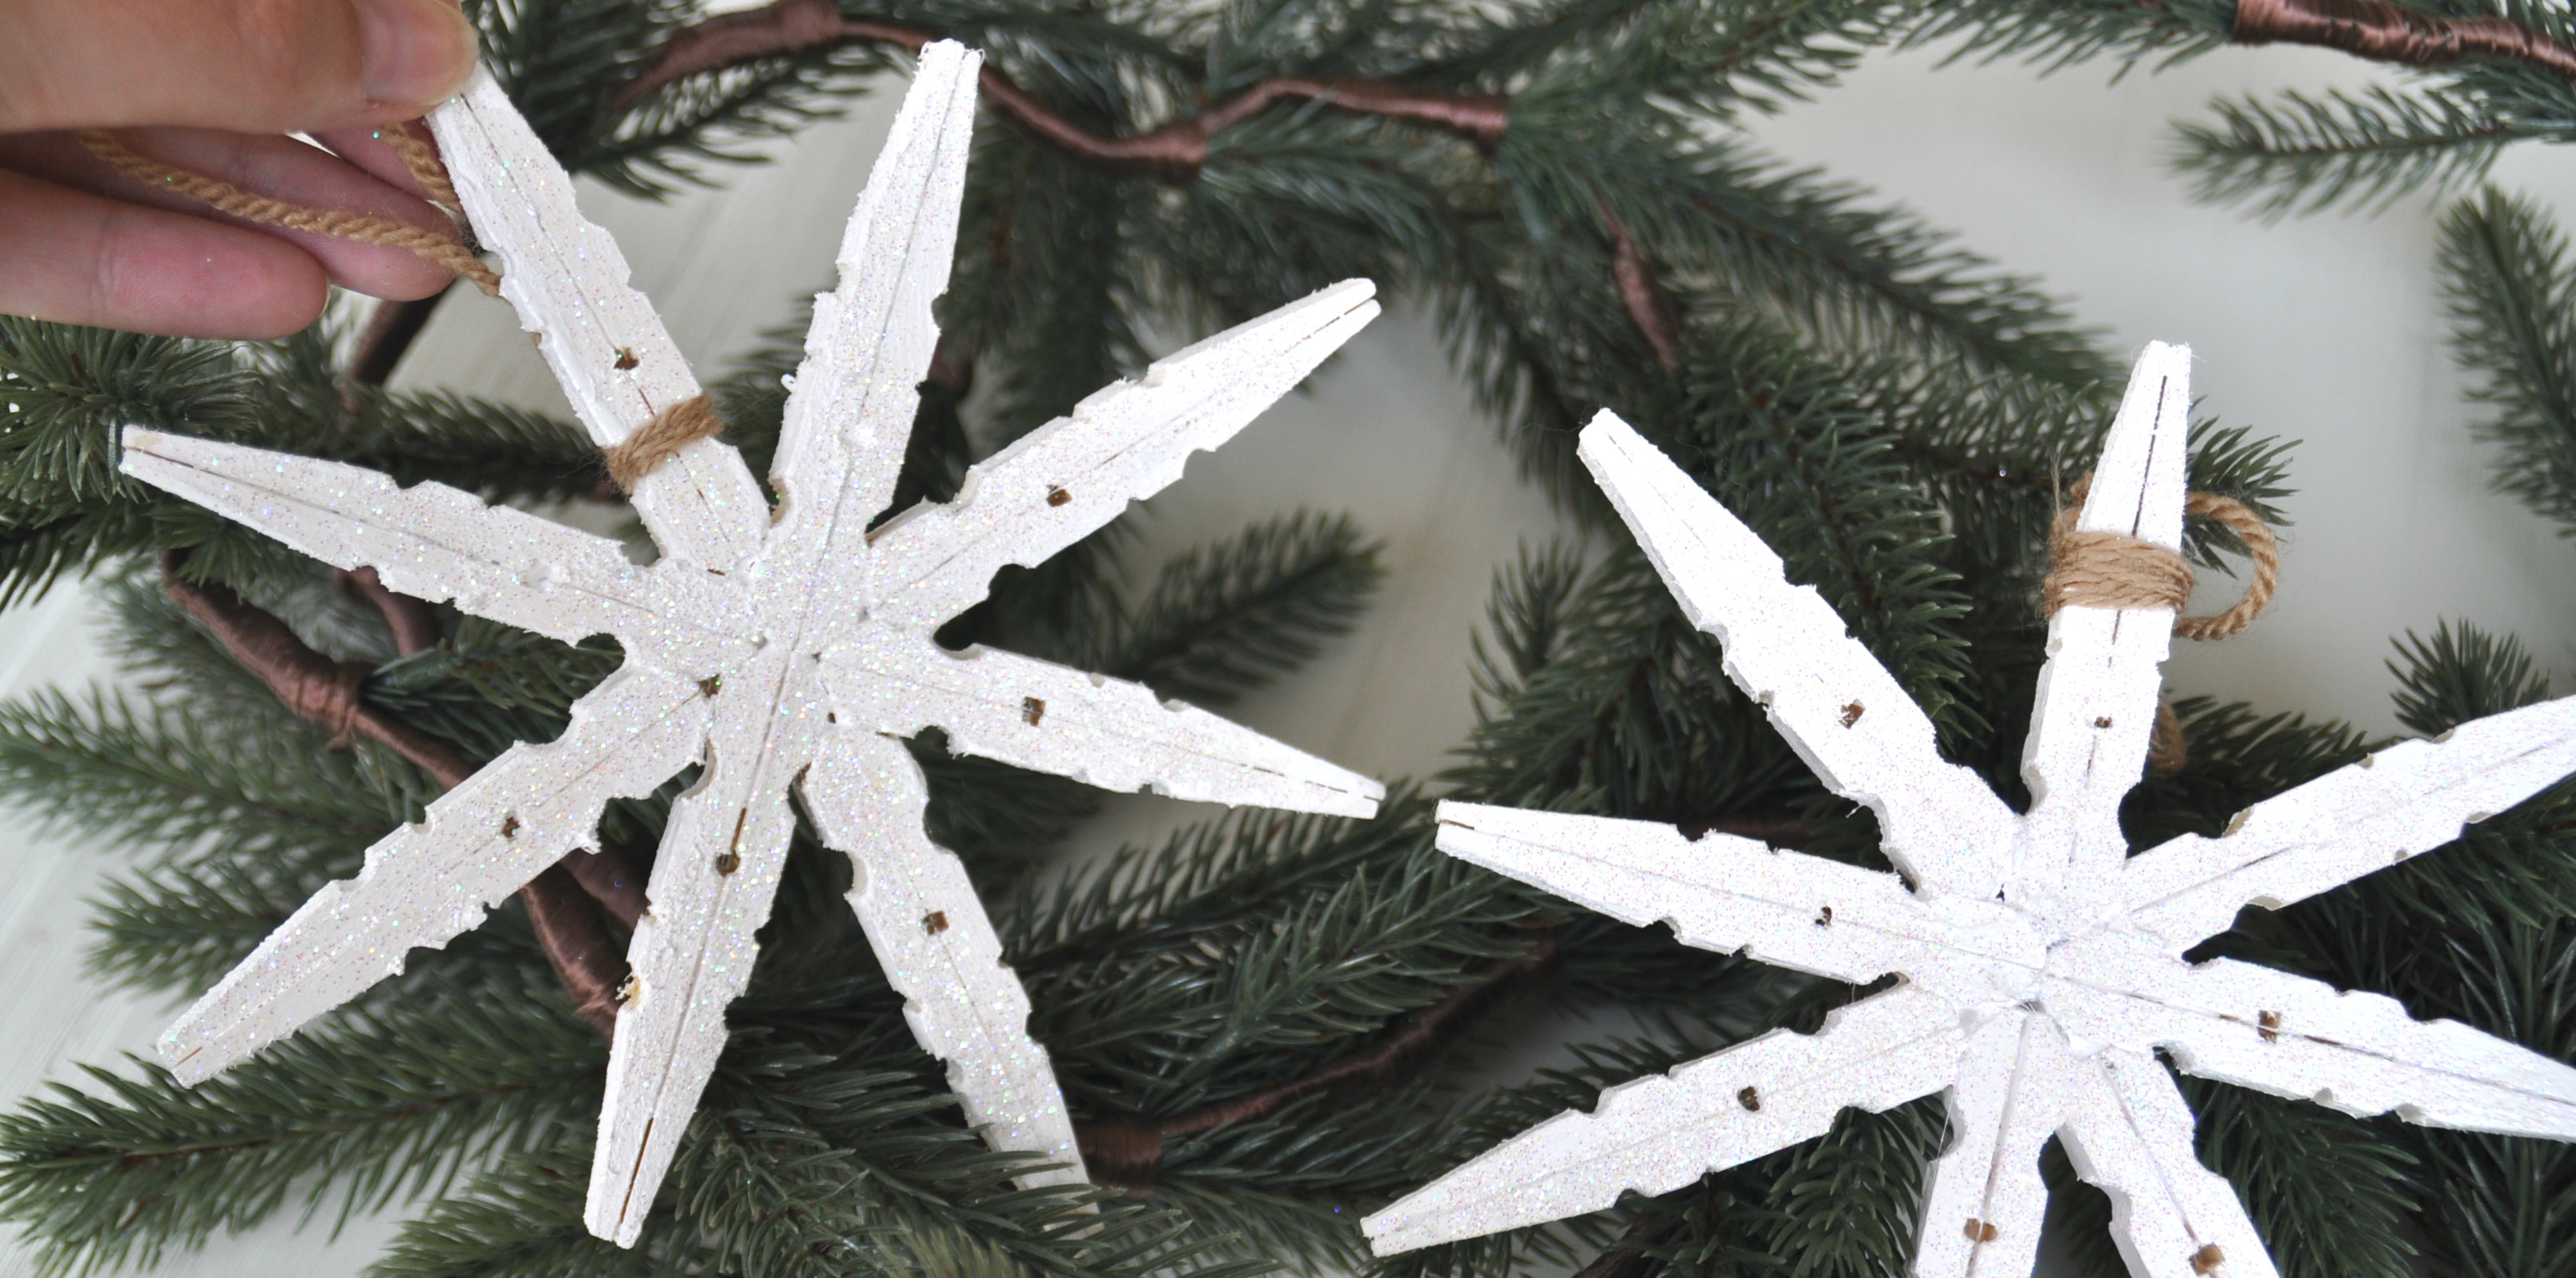 Ongebruikt Kerstknutsel: ster maken van wasknijpers UB-18